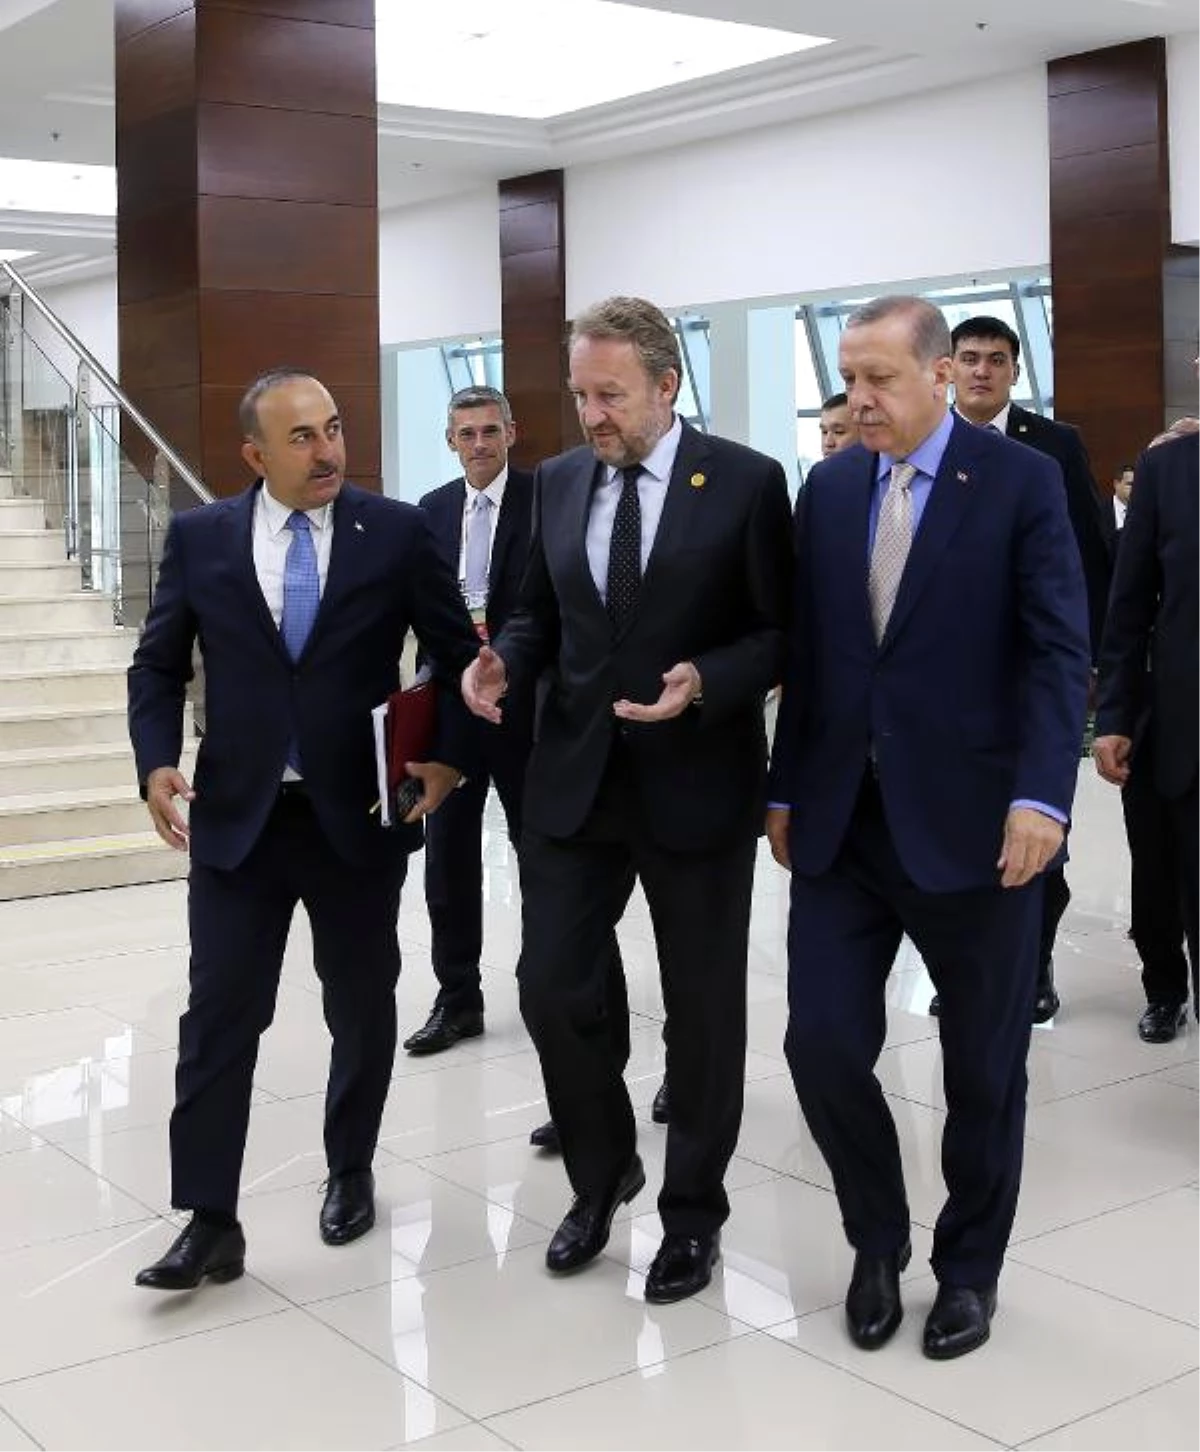 Cumhurbaşkanı Erdoğan, Bosna Hersek Cumhurbaşkanlığı Konseyi Üyesi Bakir İzzetbegoviç ile Görüştü